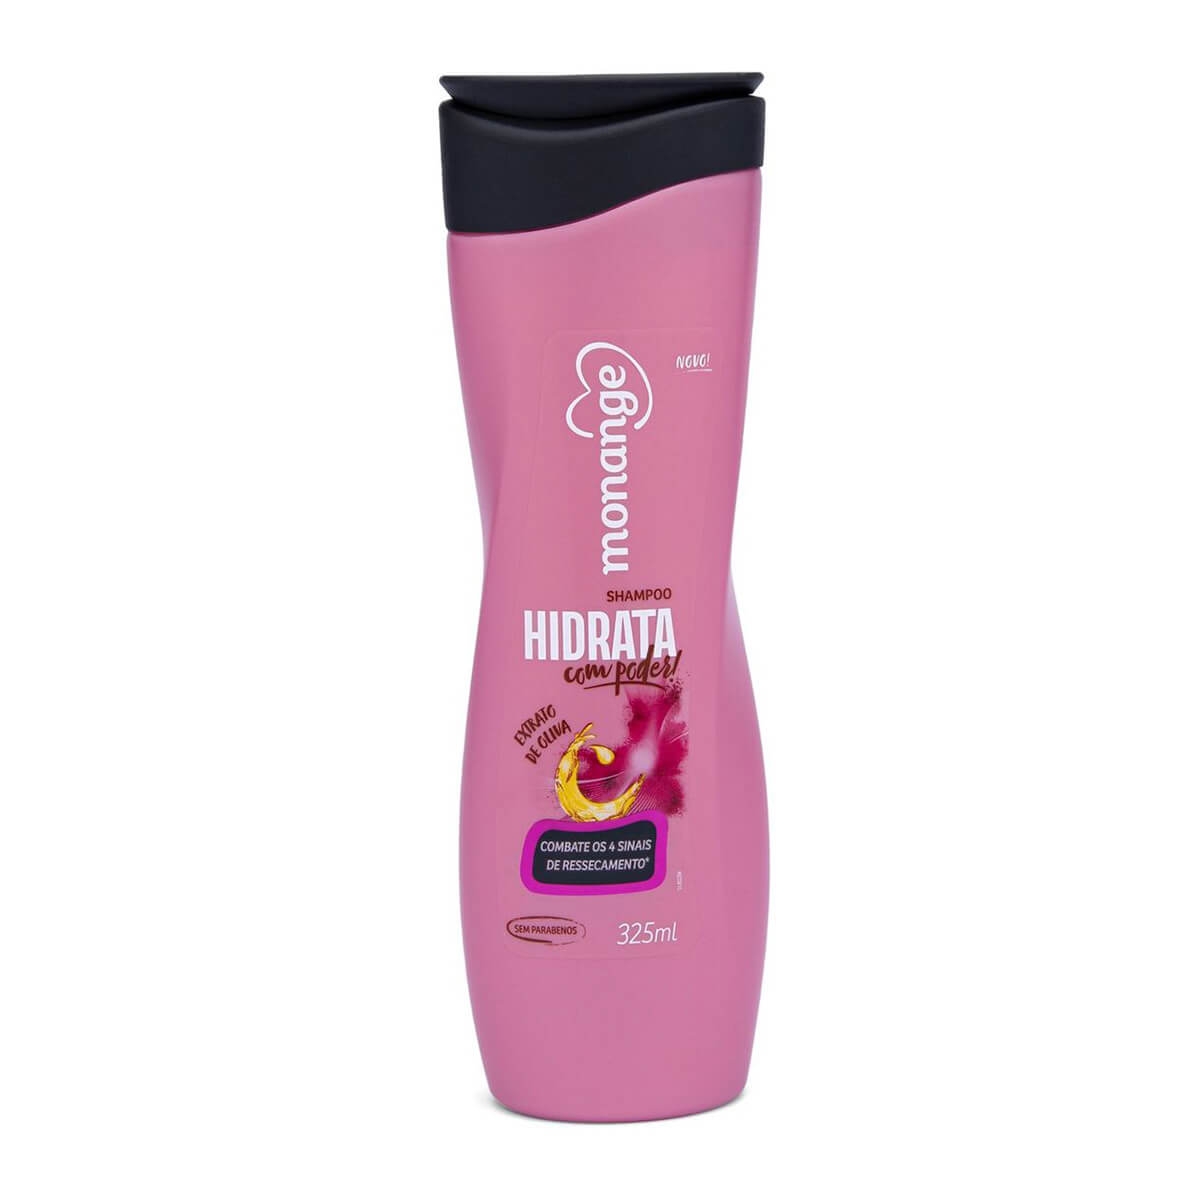 Shampoo Monange Hidrata com Poder! com 325ml 325ml